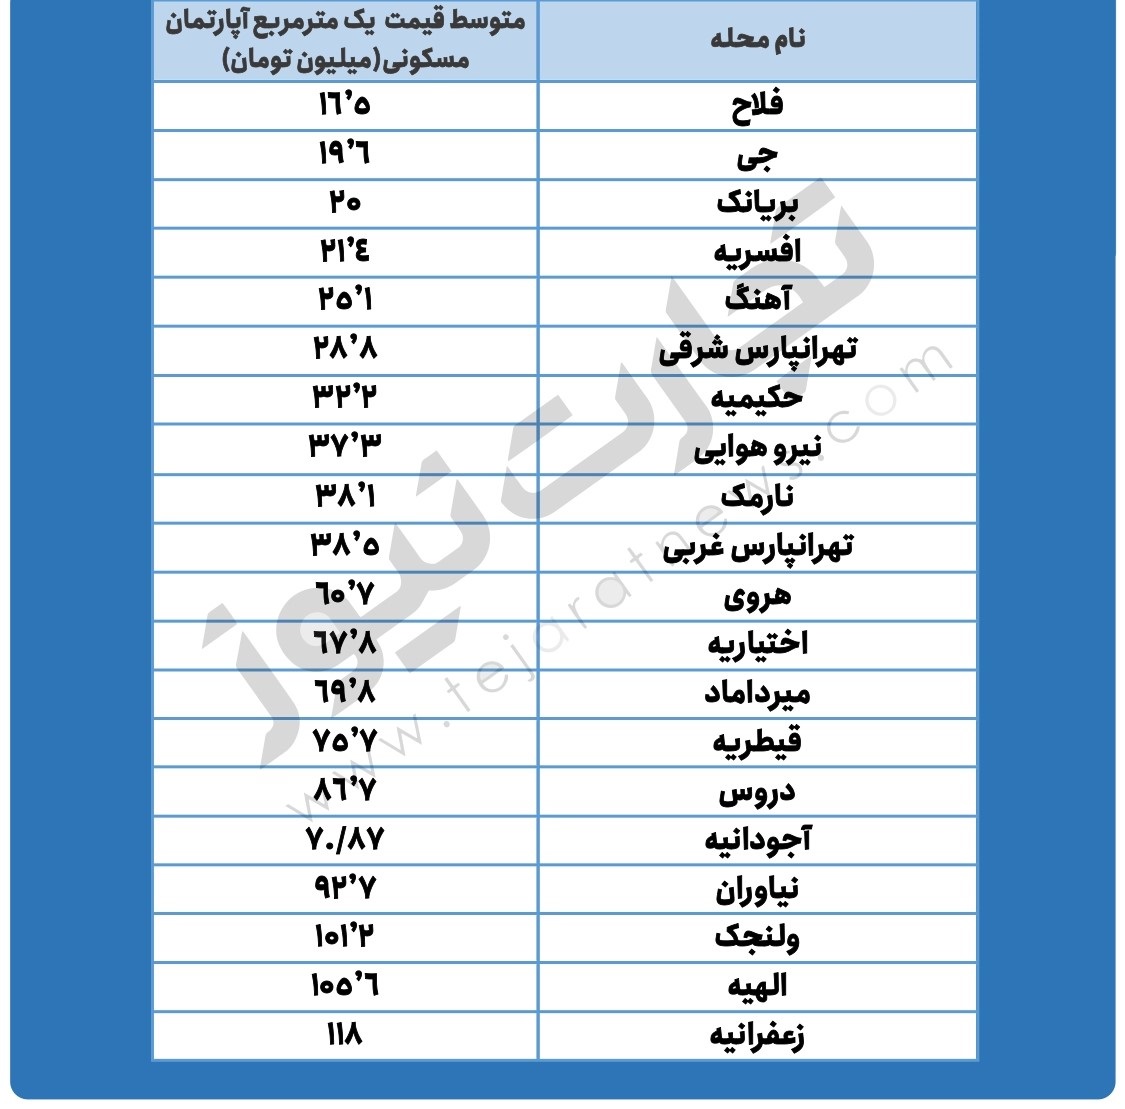 قیمت روز مسکن در مناطق مختلف تهران